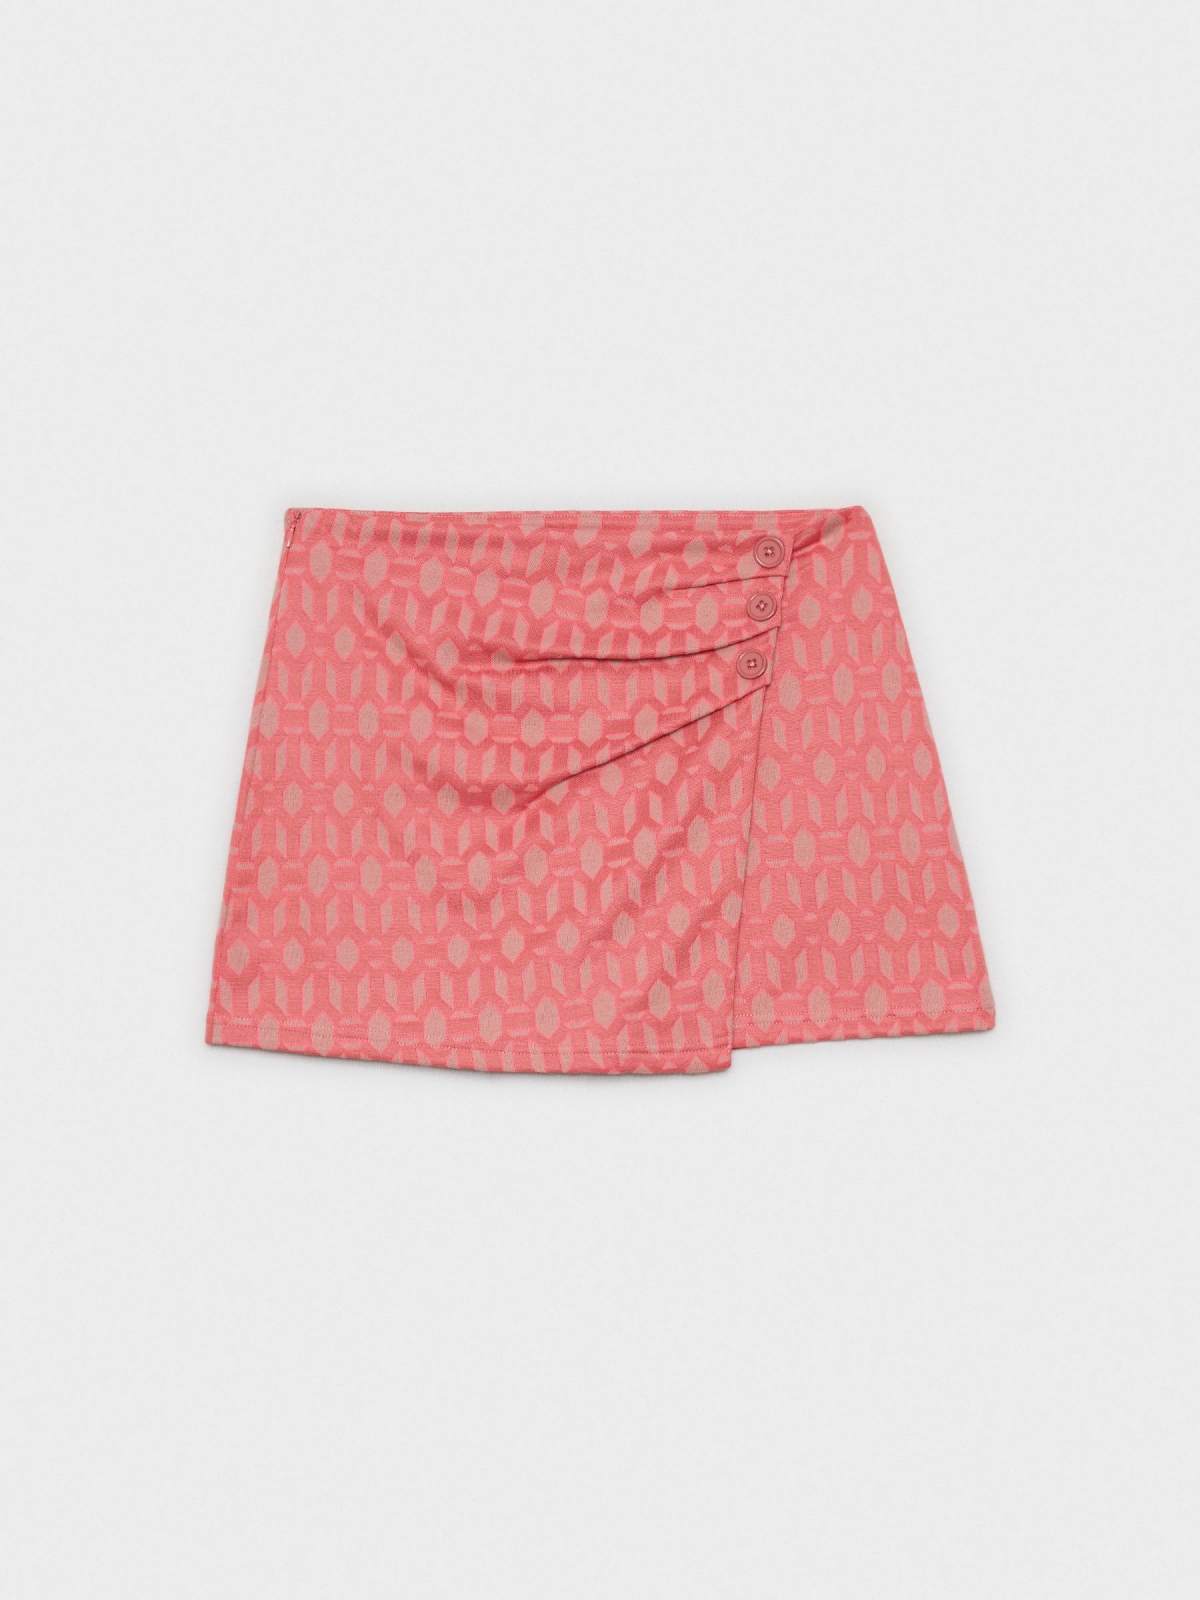  Skort de sarongue geométrico rosa pó